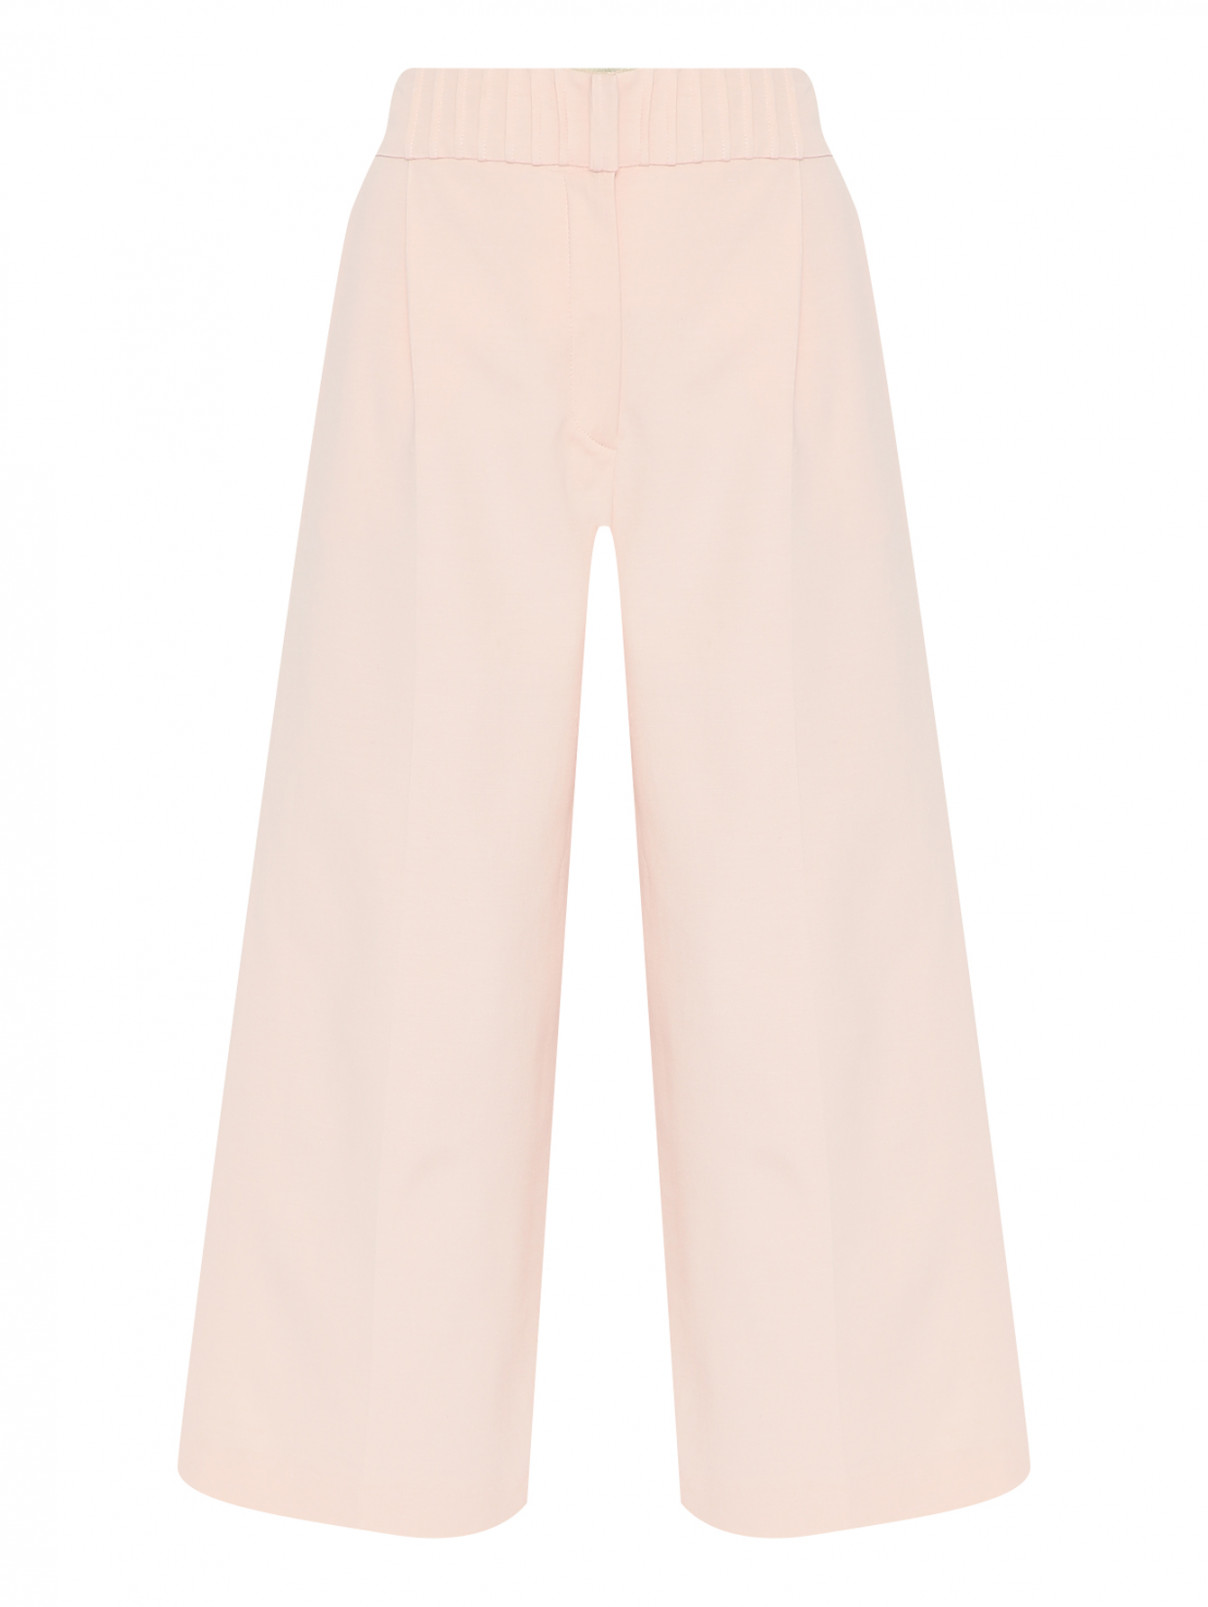 Кюлоты из хлопка с карманами Max&Co  –  Общий вид  – Цвет:  Розовый